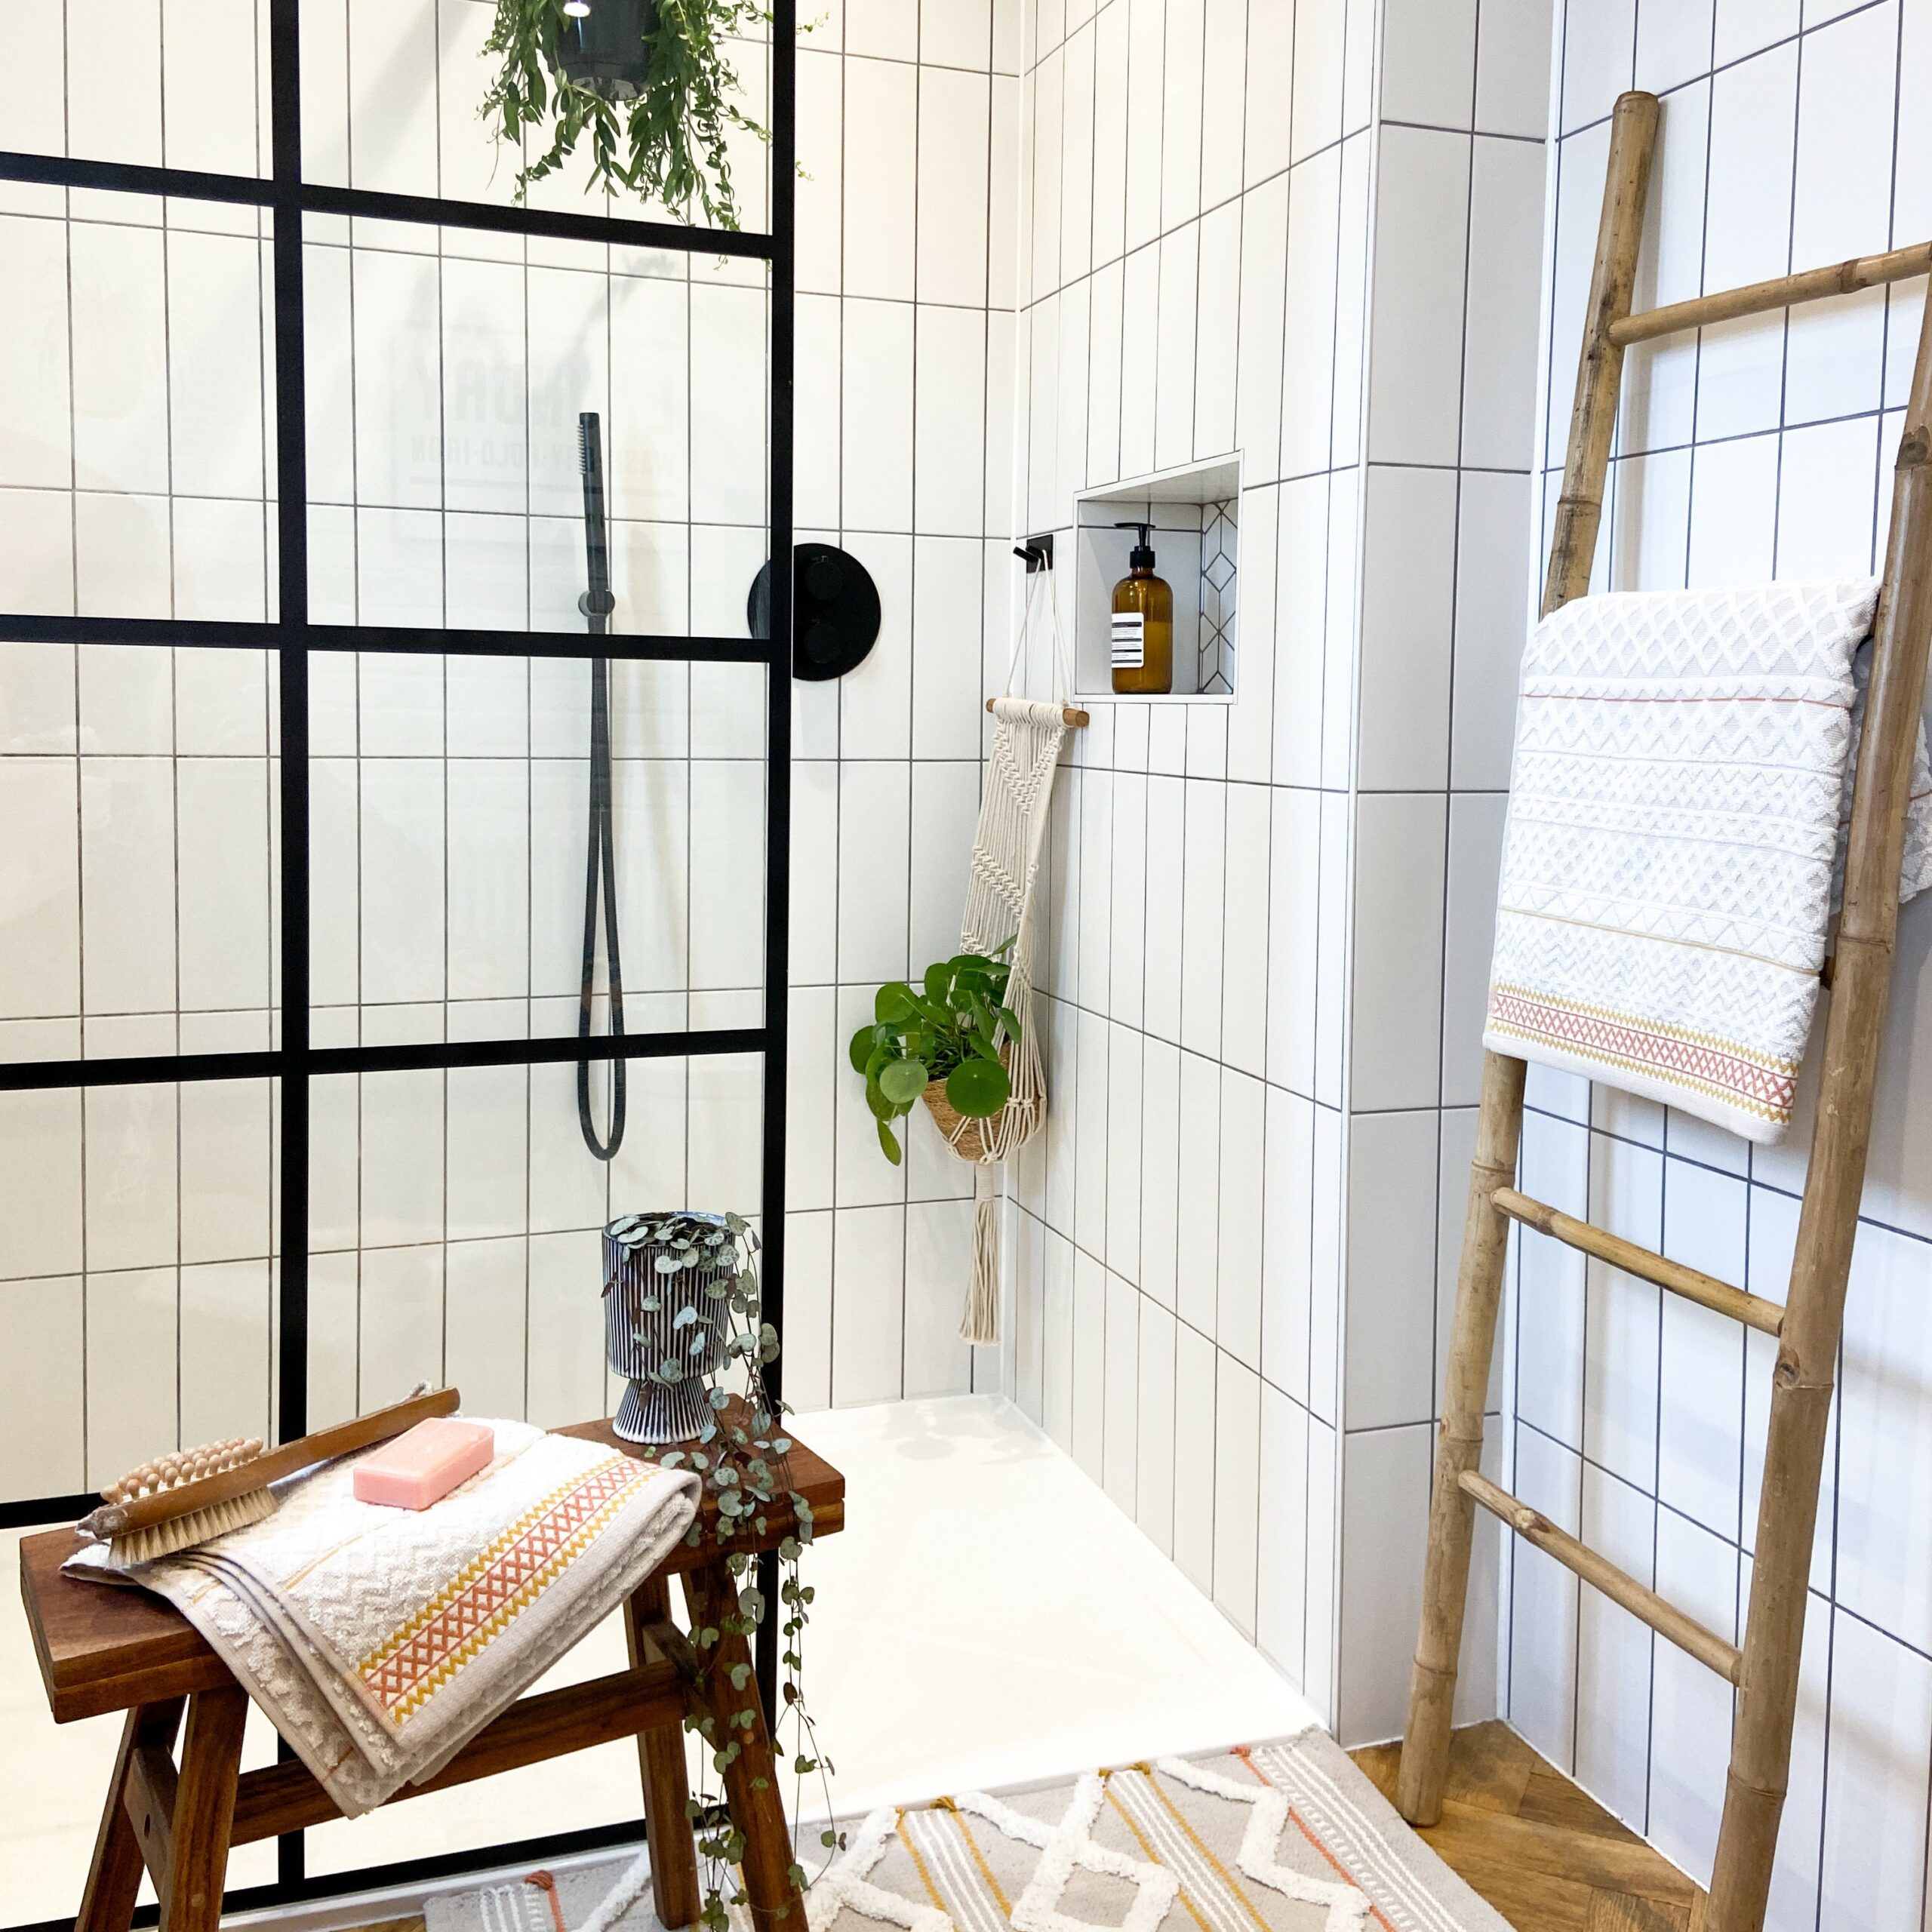 Laura Created a Bright, Fresh Bathroom Space with our Rhian Blanco Matt Tiles